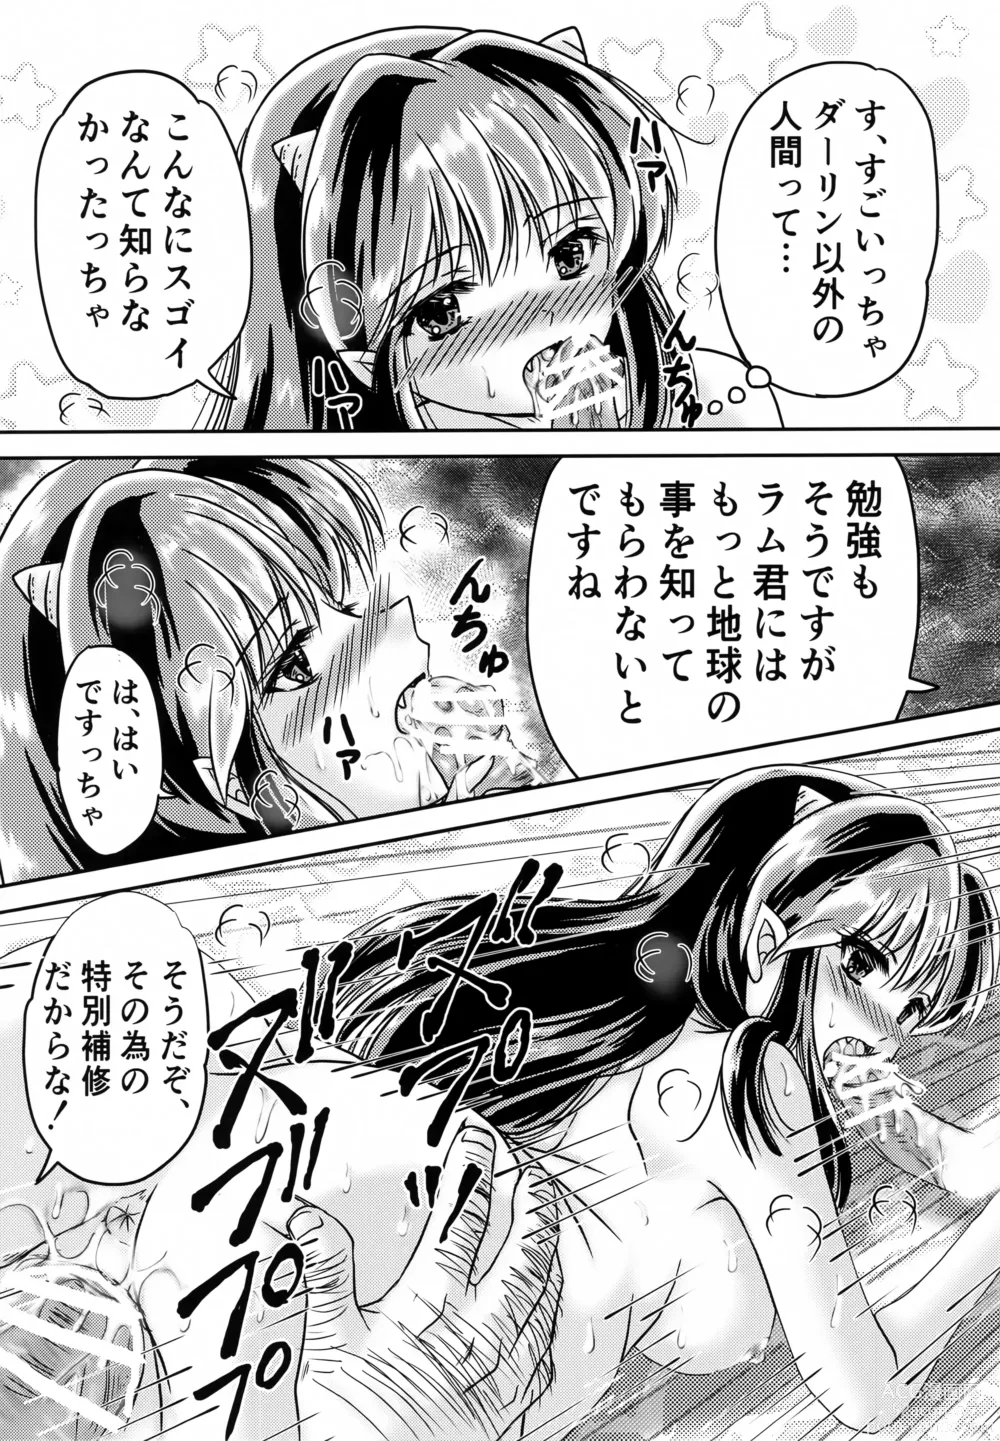 Page 7 of doujinshi Oni no Chiru Ramu